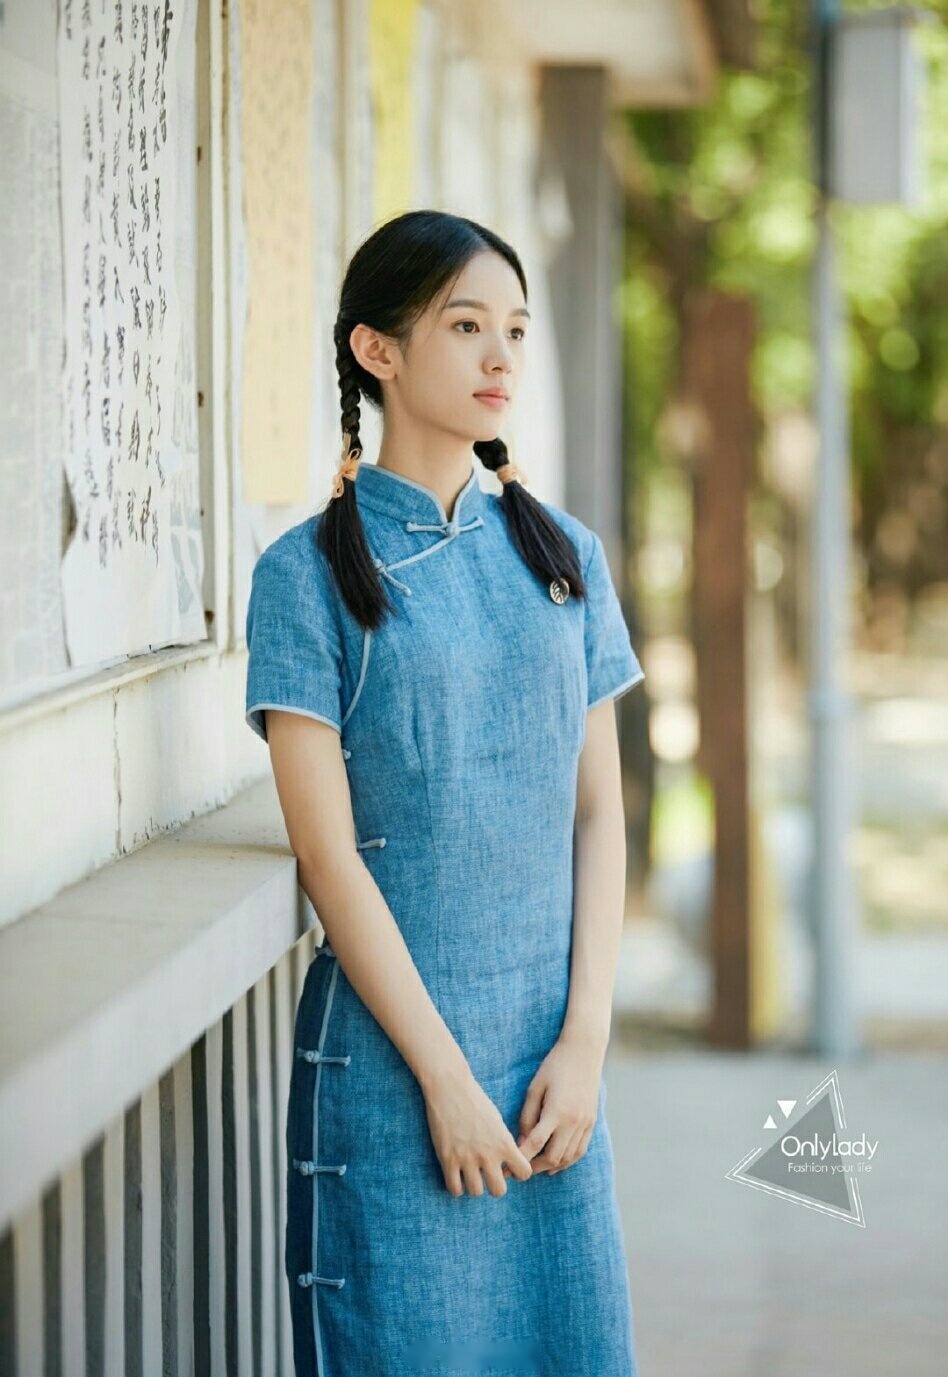 你》魏莱扮演者演员周也发布最新民国造型剧照,双麻花辫搭配蓝色旗袍